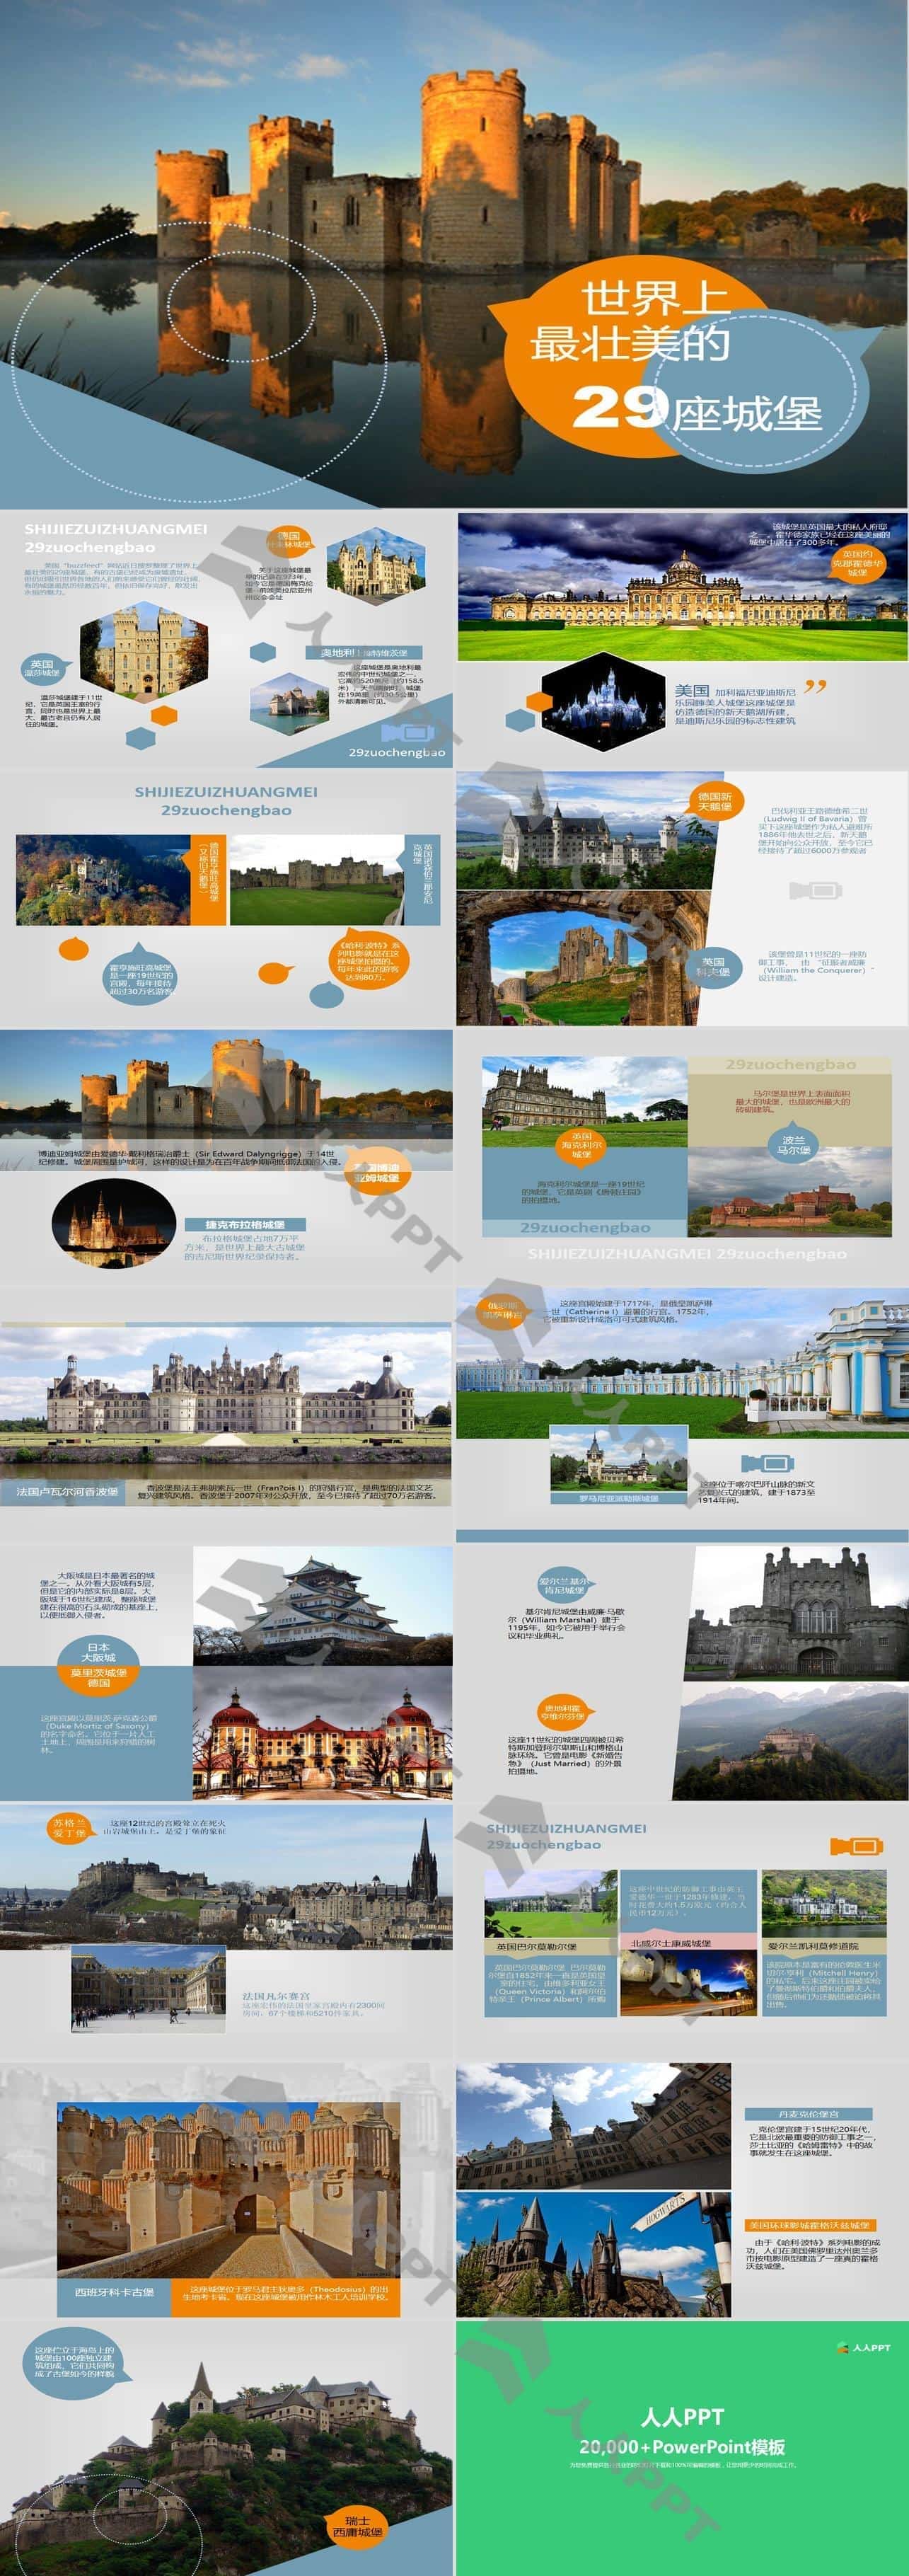 世界最壮美29座城堡图文说明介绍PPT模板长图